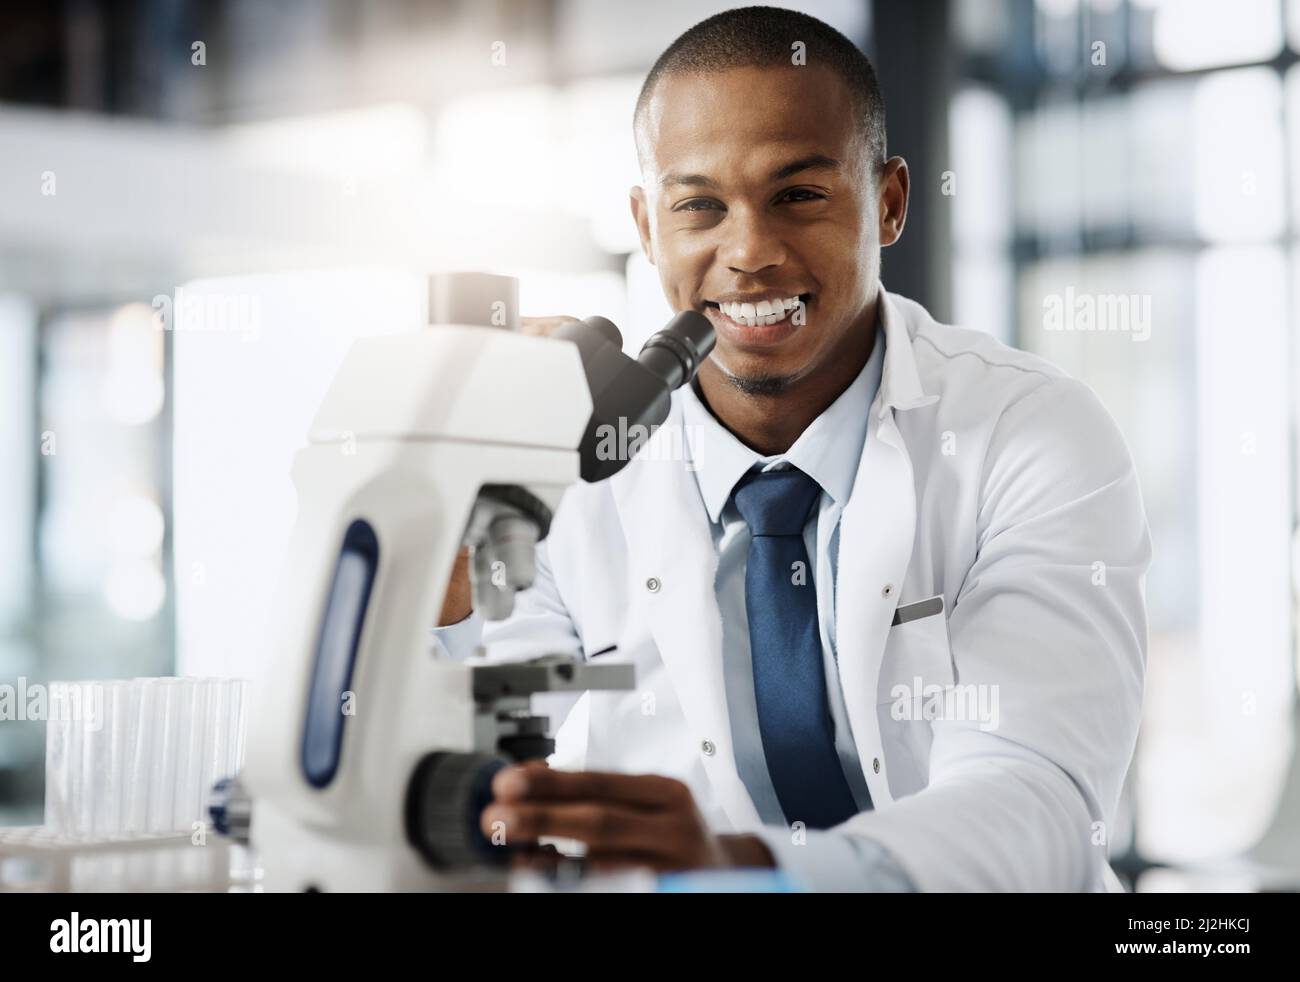 Die Welt verändern eine Entdeckung nach der anderen. Beschnittenes Porträt eines hübschen jungen Wissenschaftlers, der ein Mikroskop benutzte, während er in seinem Labor forschte. Stockfoto